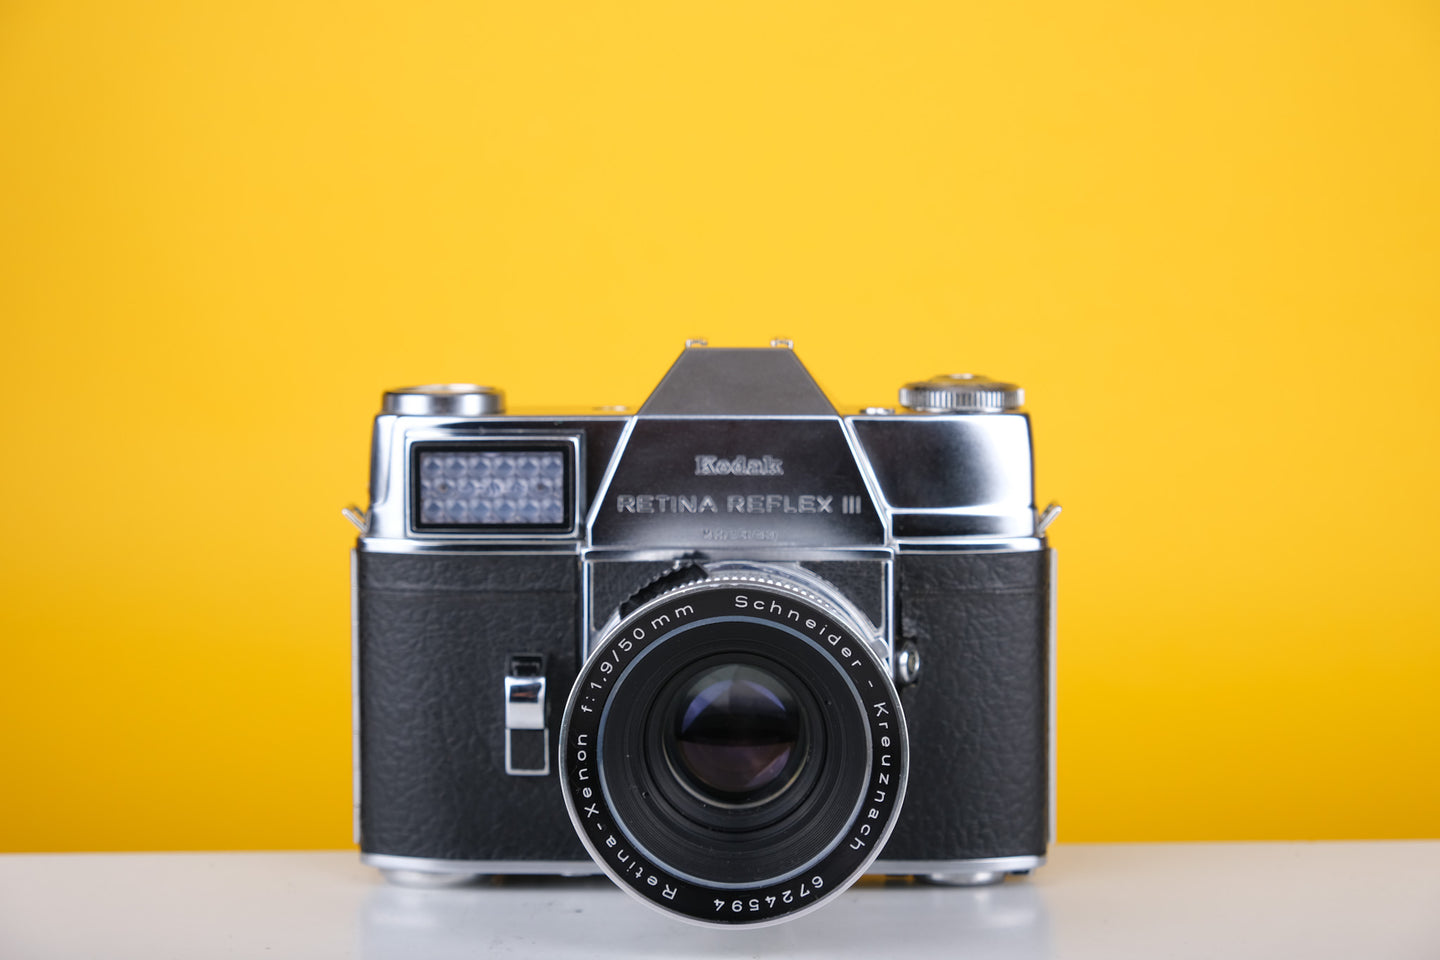 Kodak Retina Reflex III 35mm SLR Film Camera with 50mm f1.9